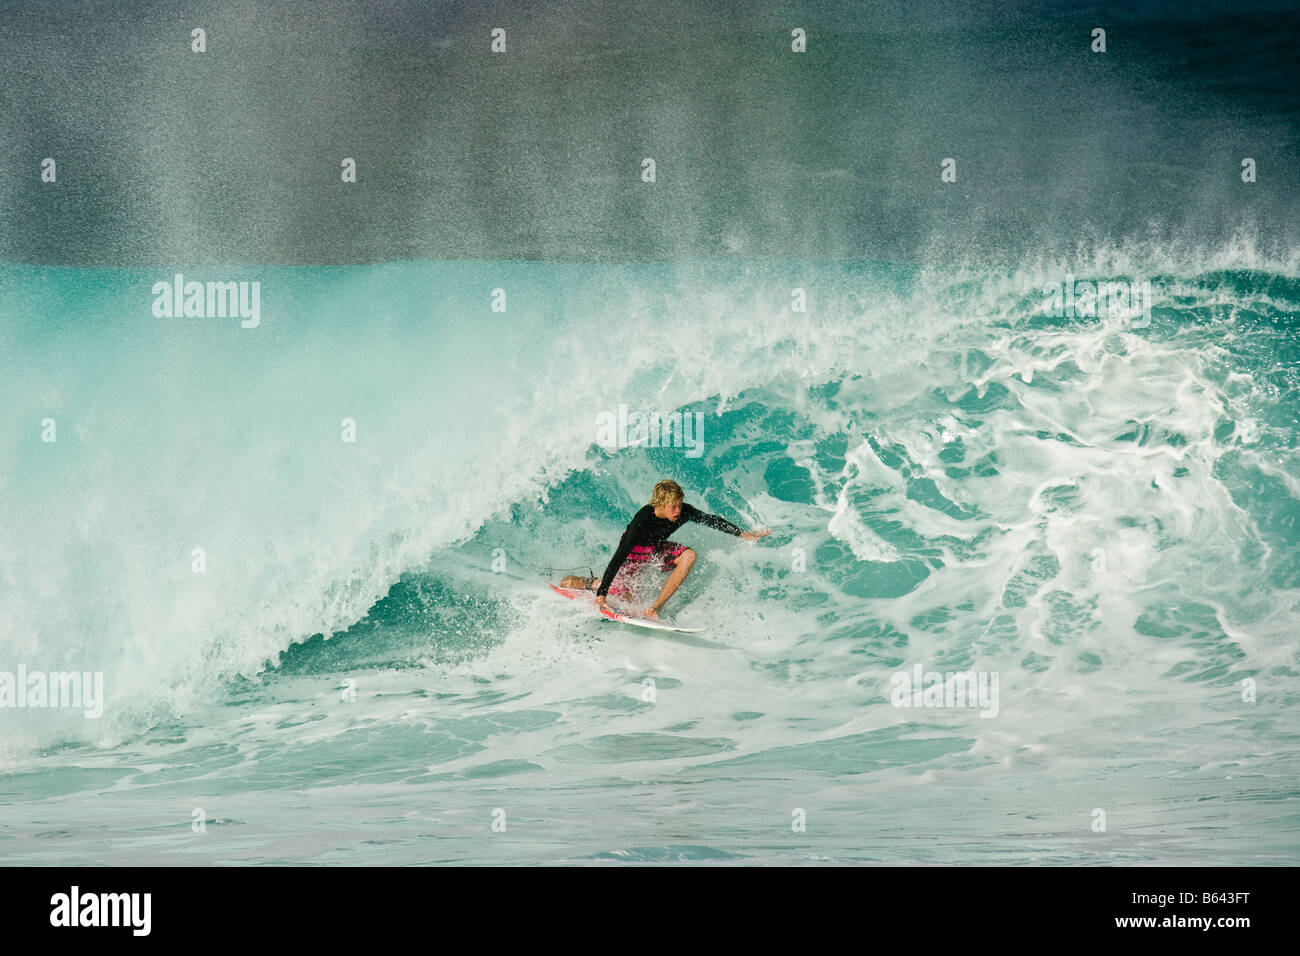 Équitation surfeur vague immense, Pipeline, North Shore, Oahu, Hawaii Banque D'Images